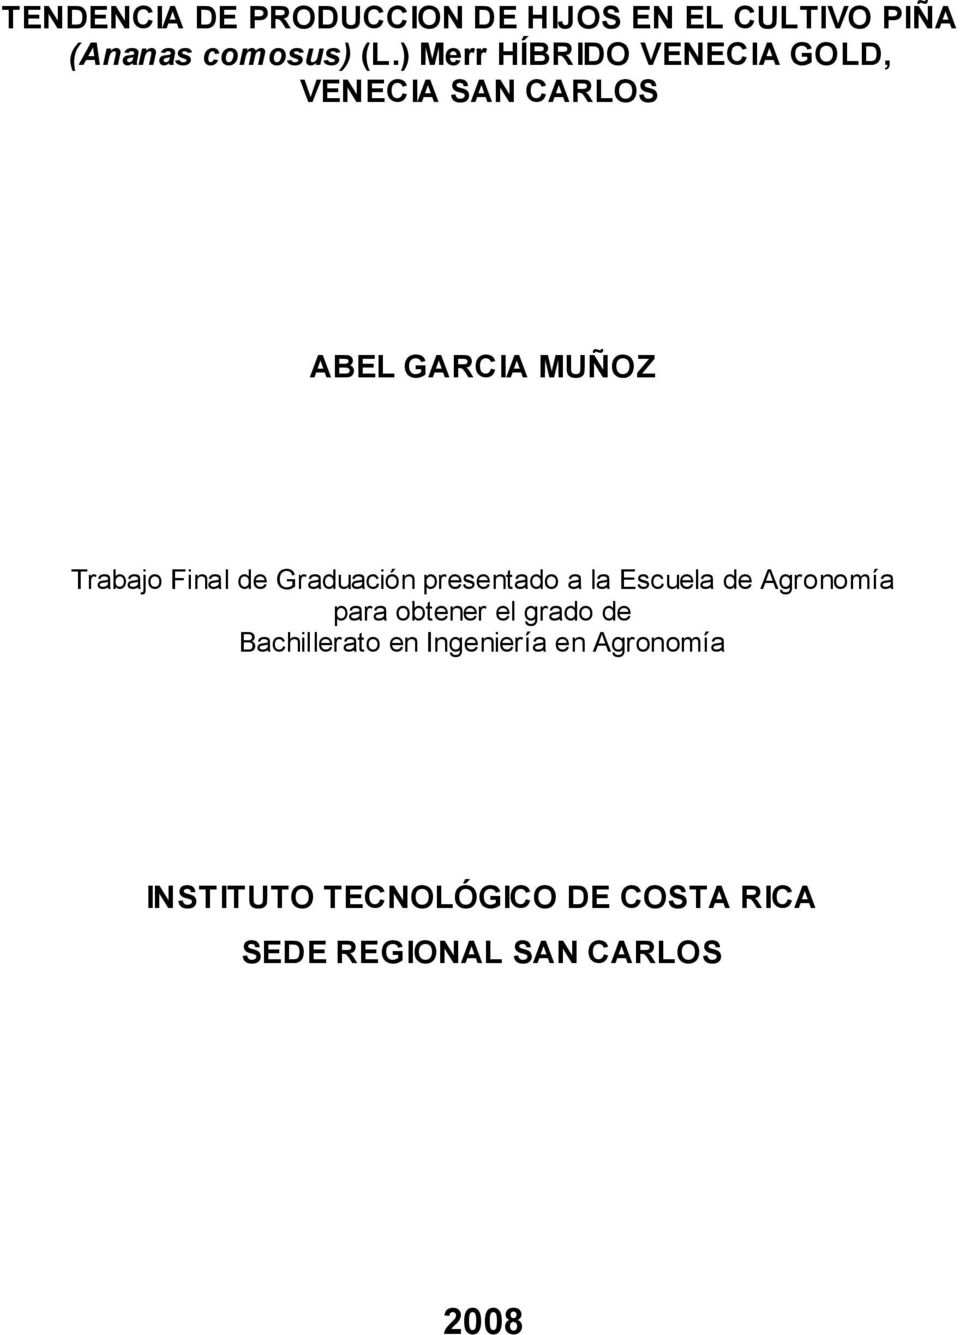 Graduación presentado a la Escuela de Agronomía para obtener el grado de